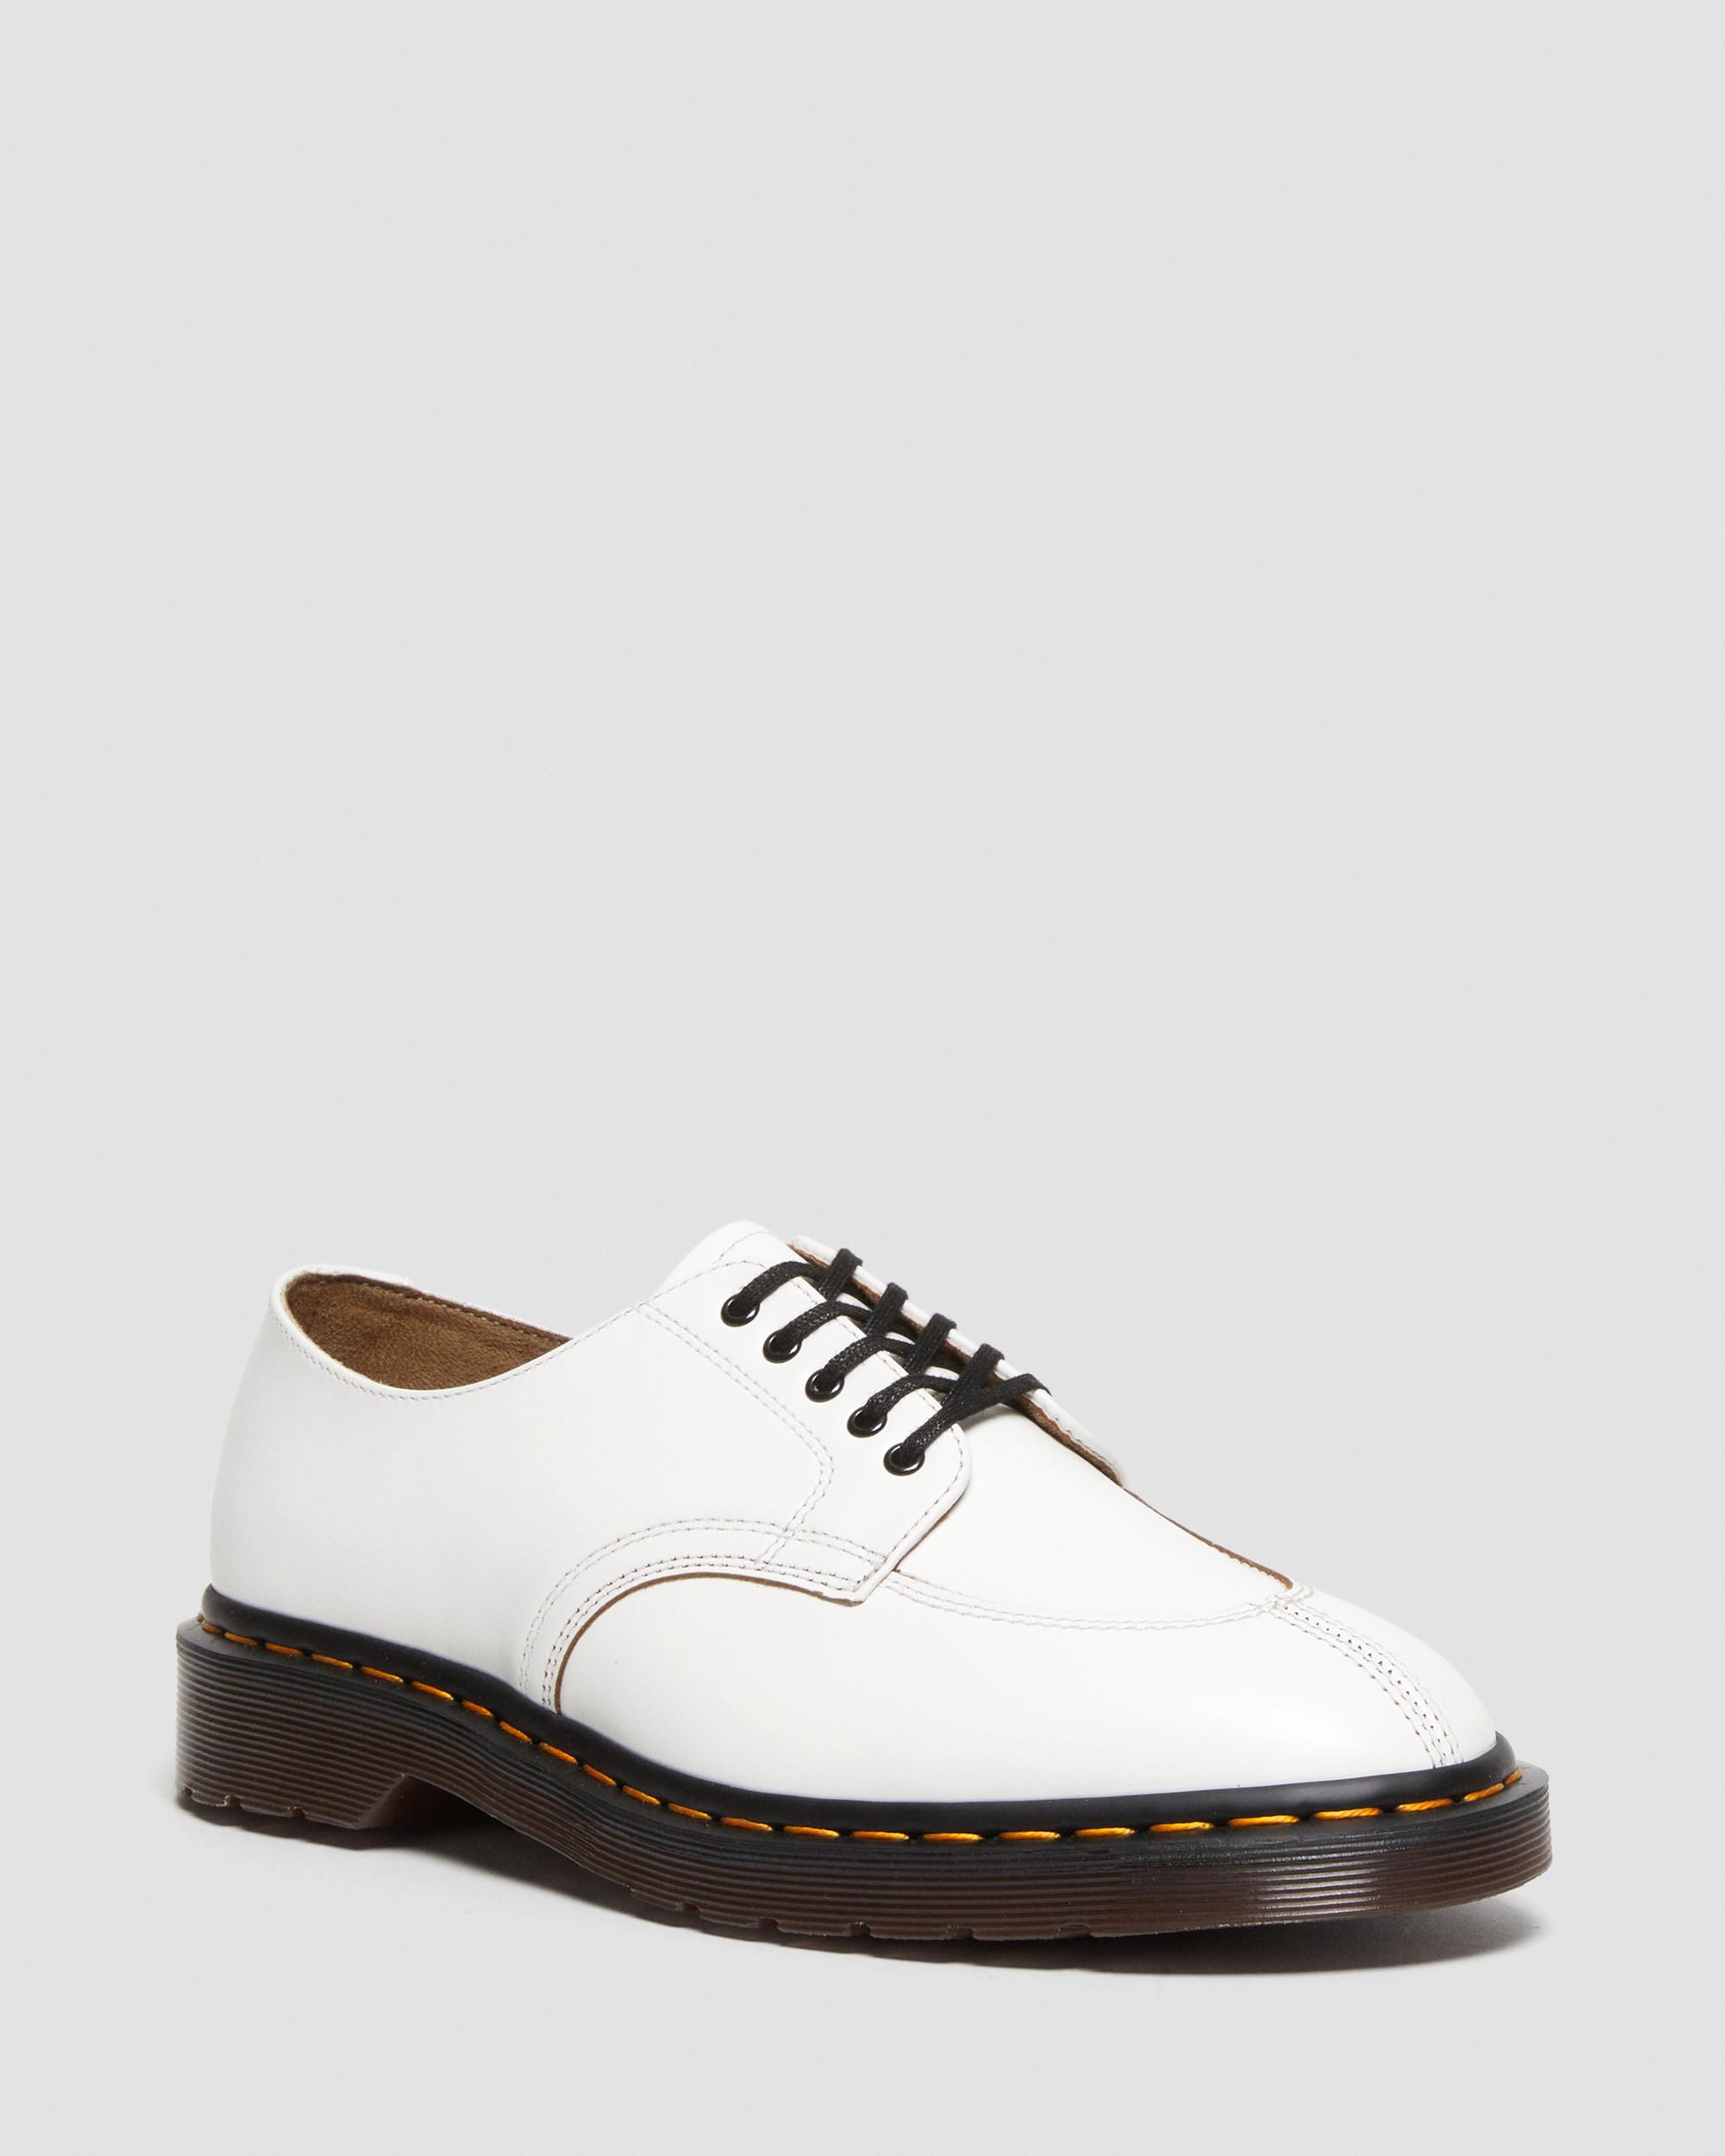 2046 Vintage Smooth Leather Oxford Shoes2046 Vintage Glattlederschuhe Dr. Martens